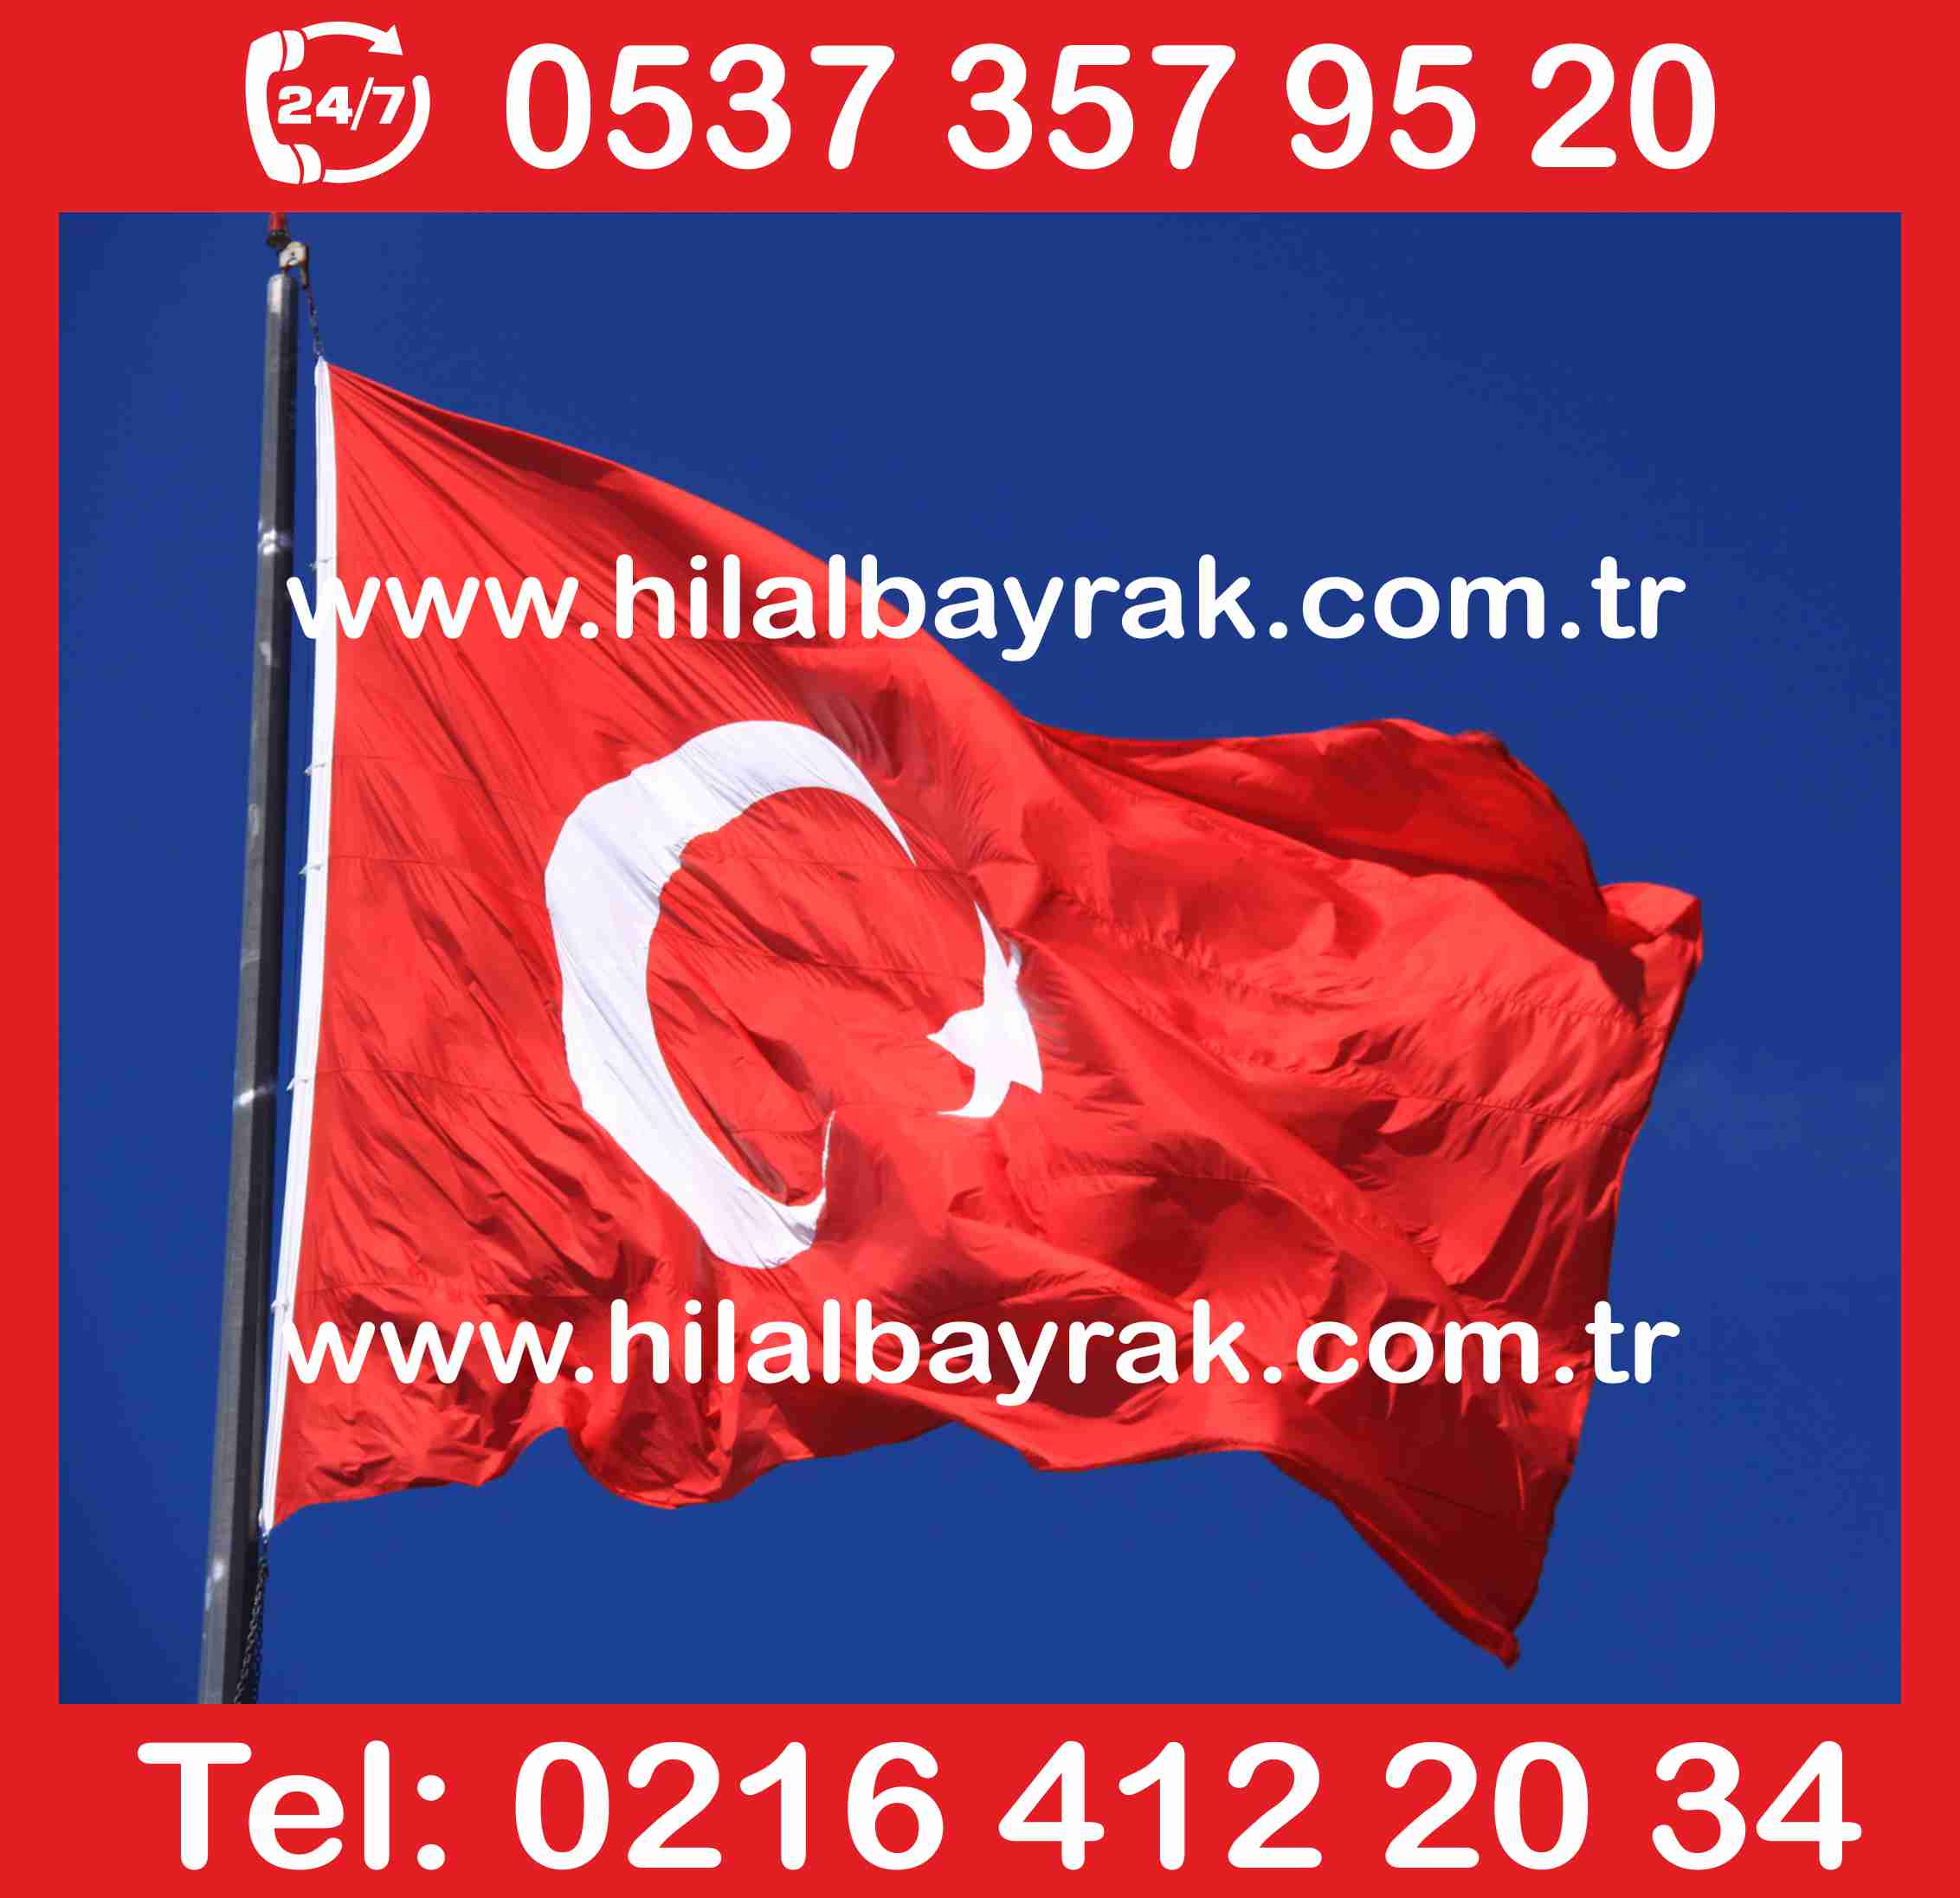 türk bayrak Türk Bayrağı türk bayrak Türk Bayrakları türk bayrak ümraniye türk bayrak üretimi